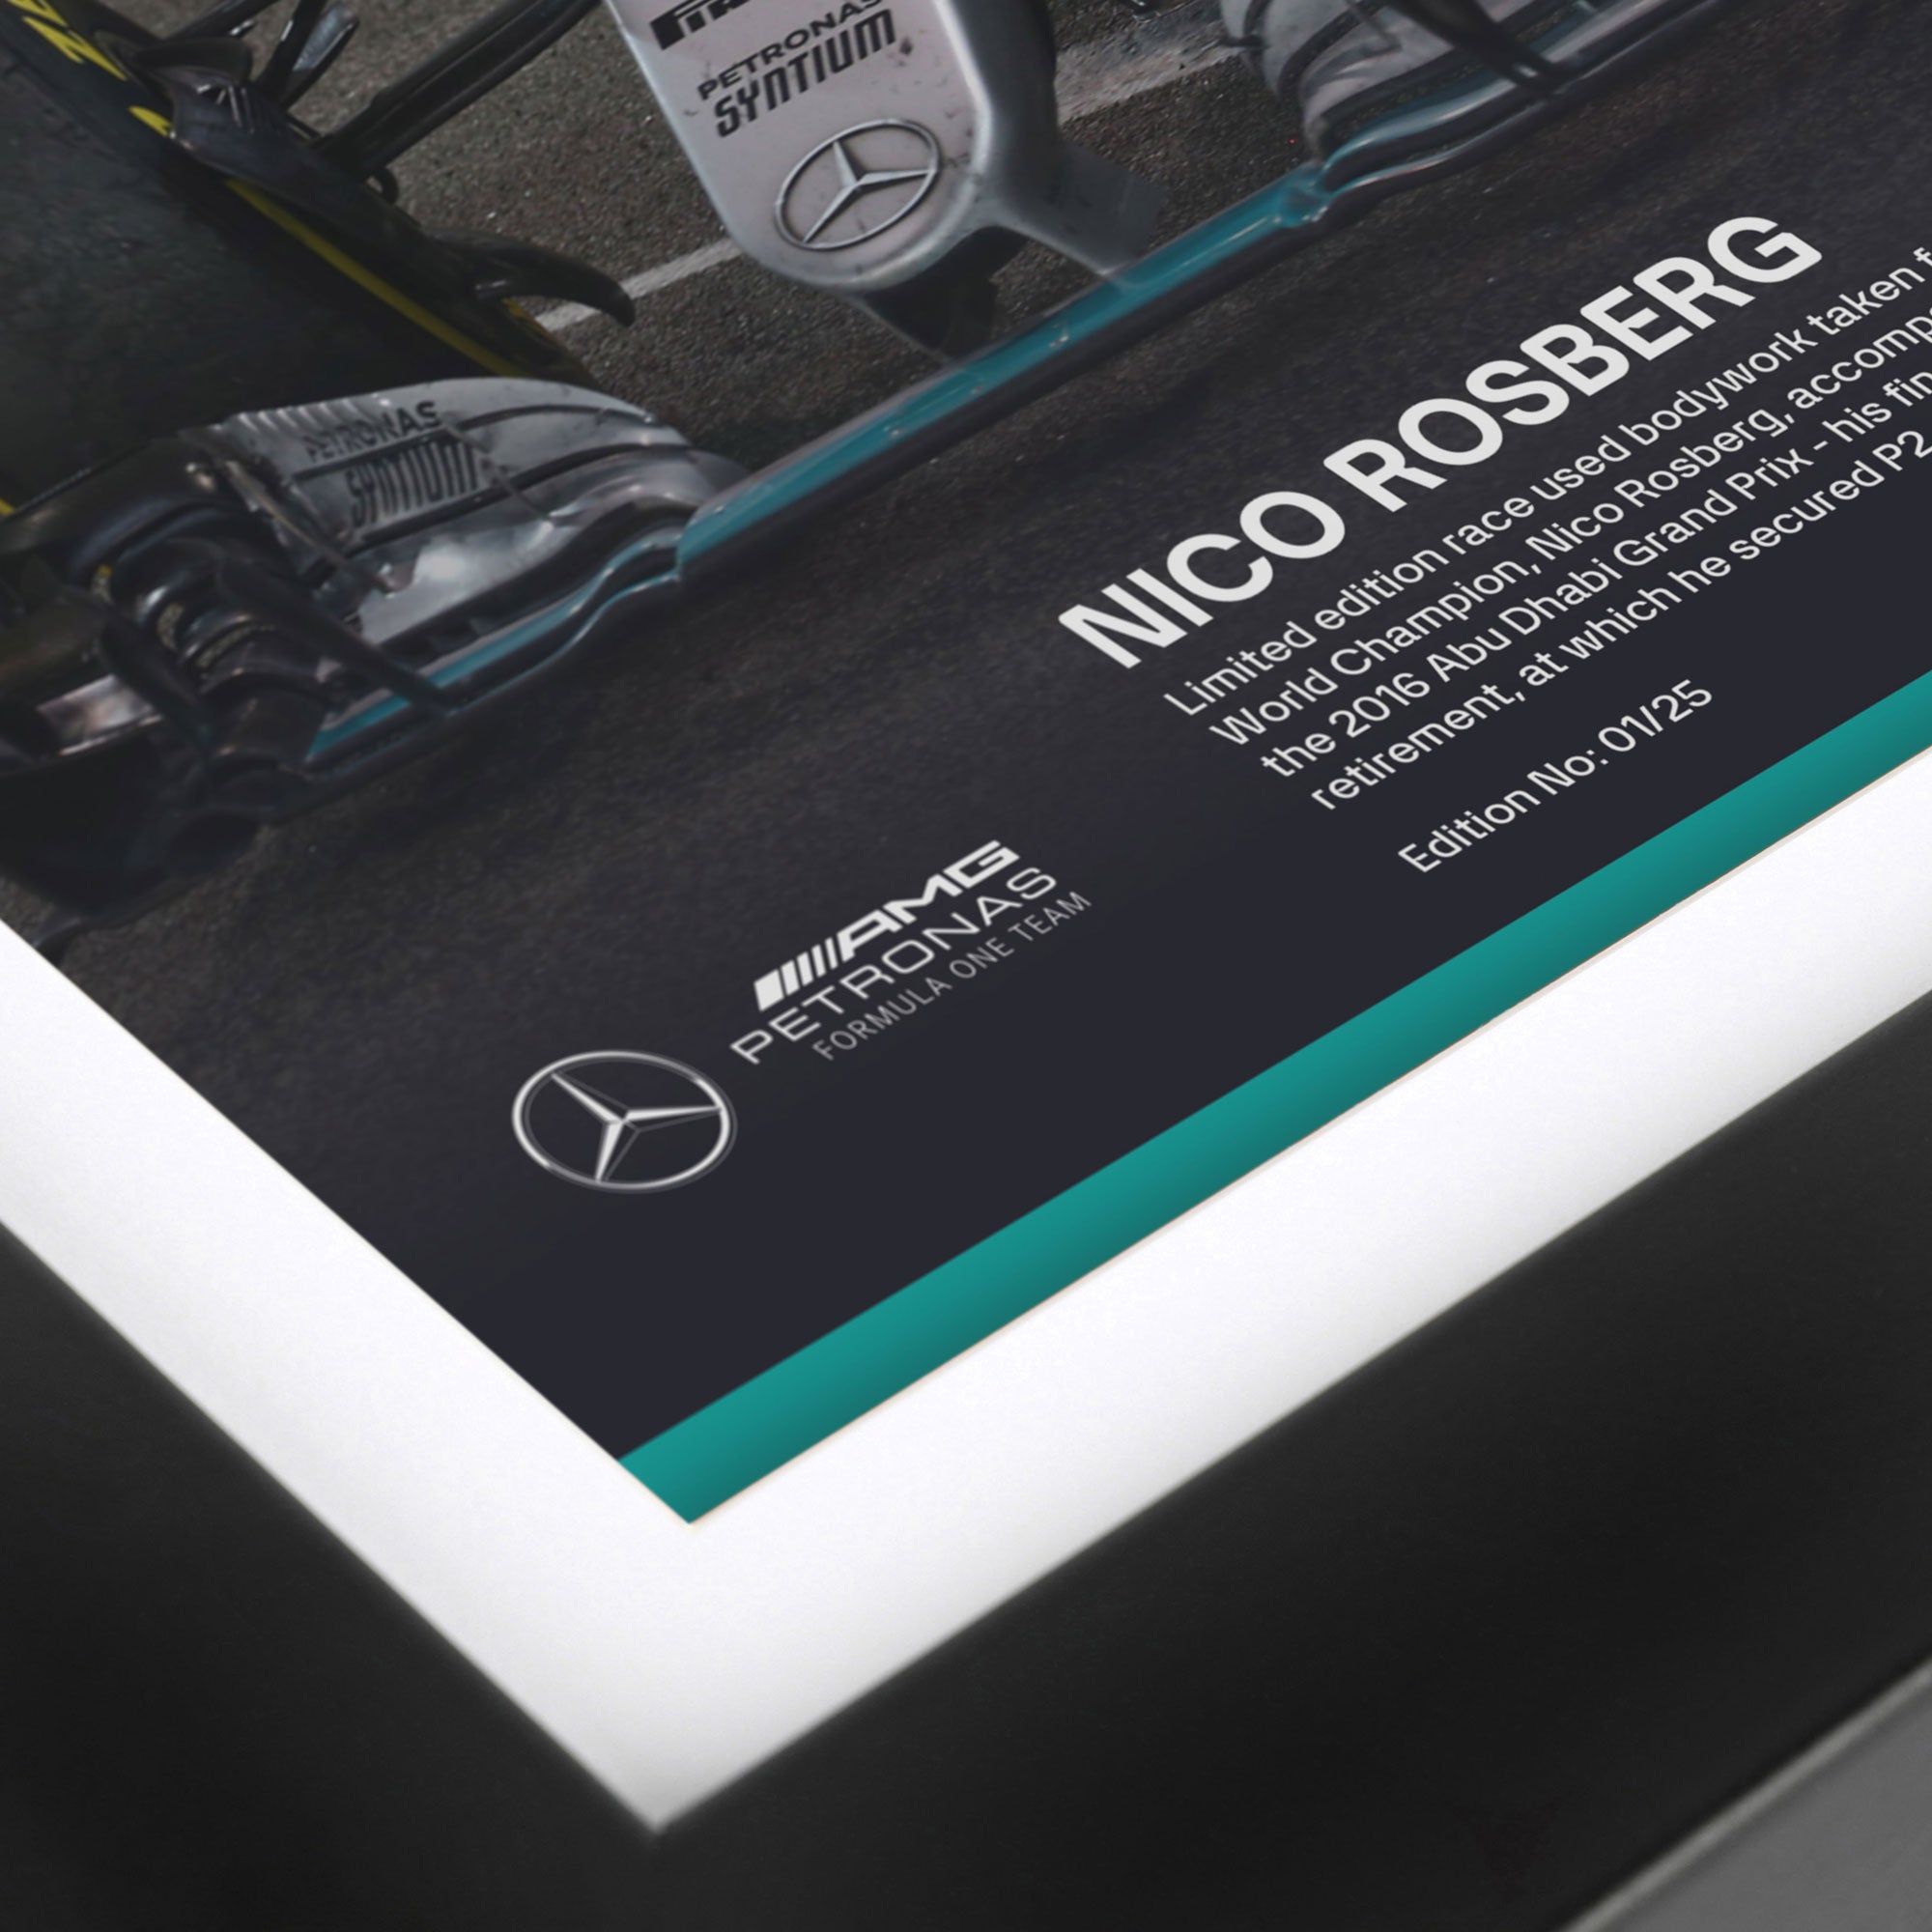 Limited-Edition Nico Rosberg 2016 Bodywork & Photo – Abu Dhabi GP